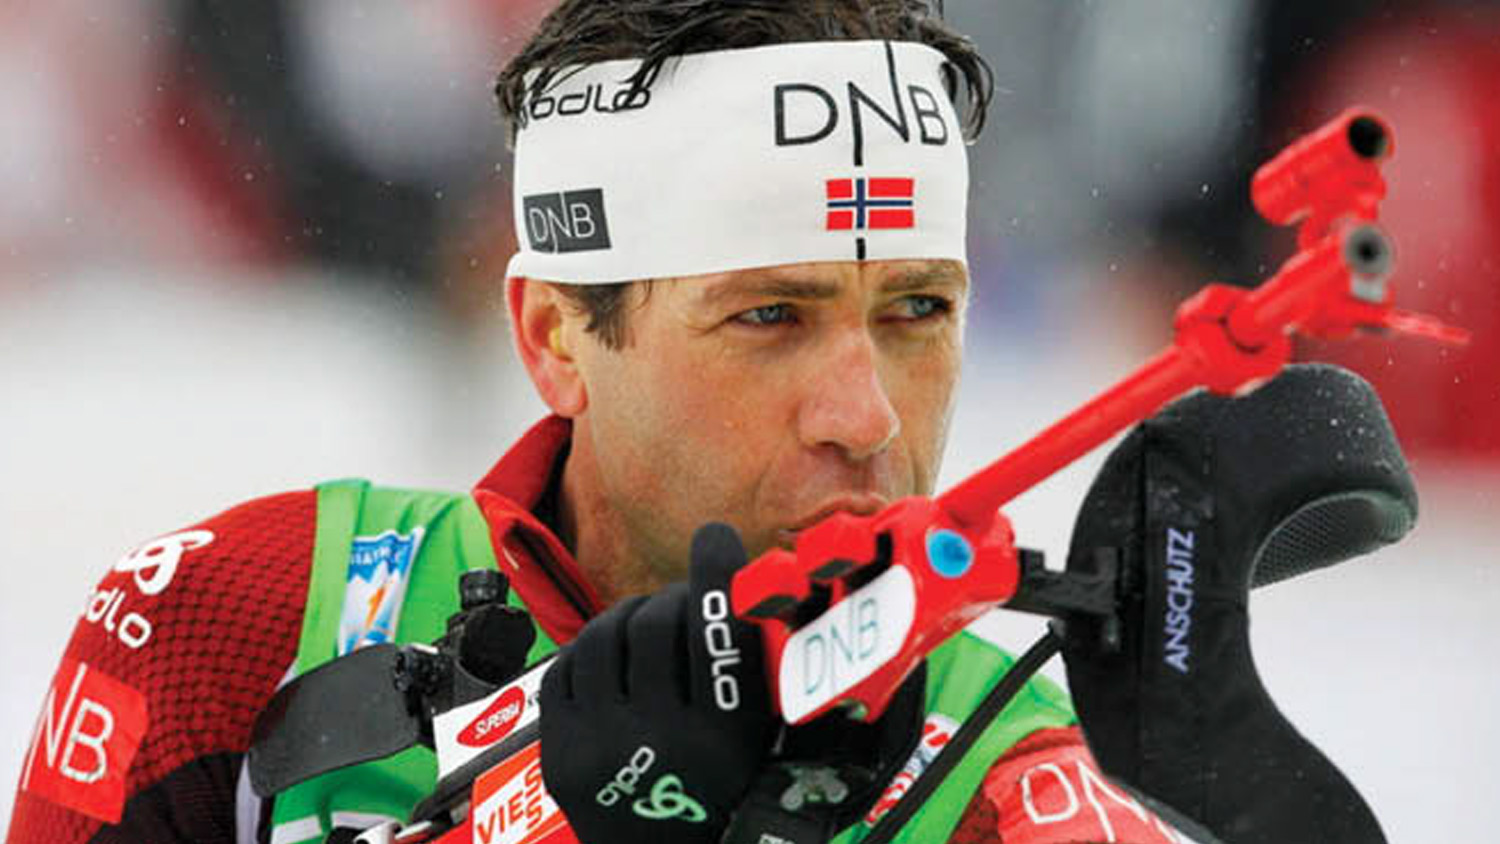 Ole Einar Bjørndalen of Norway